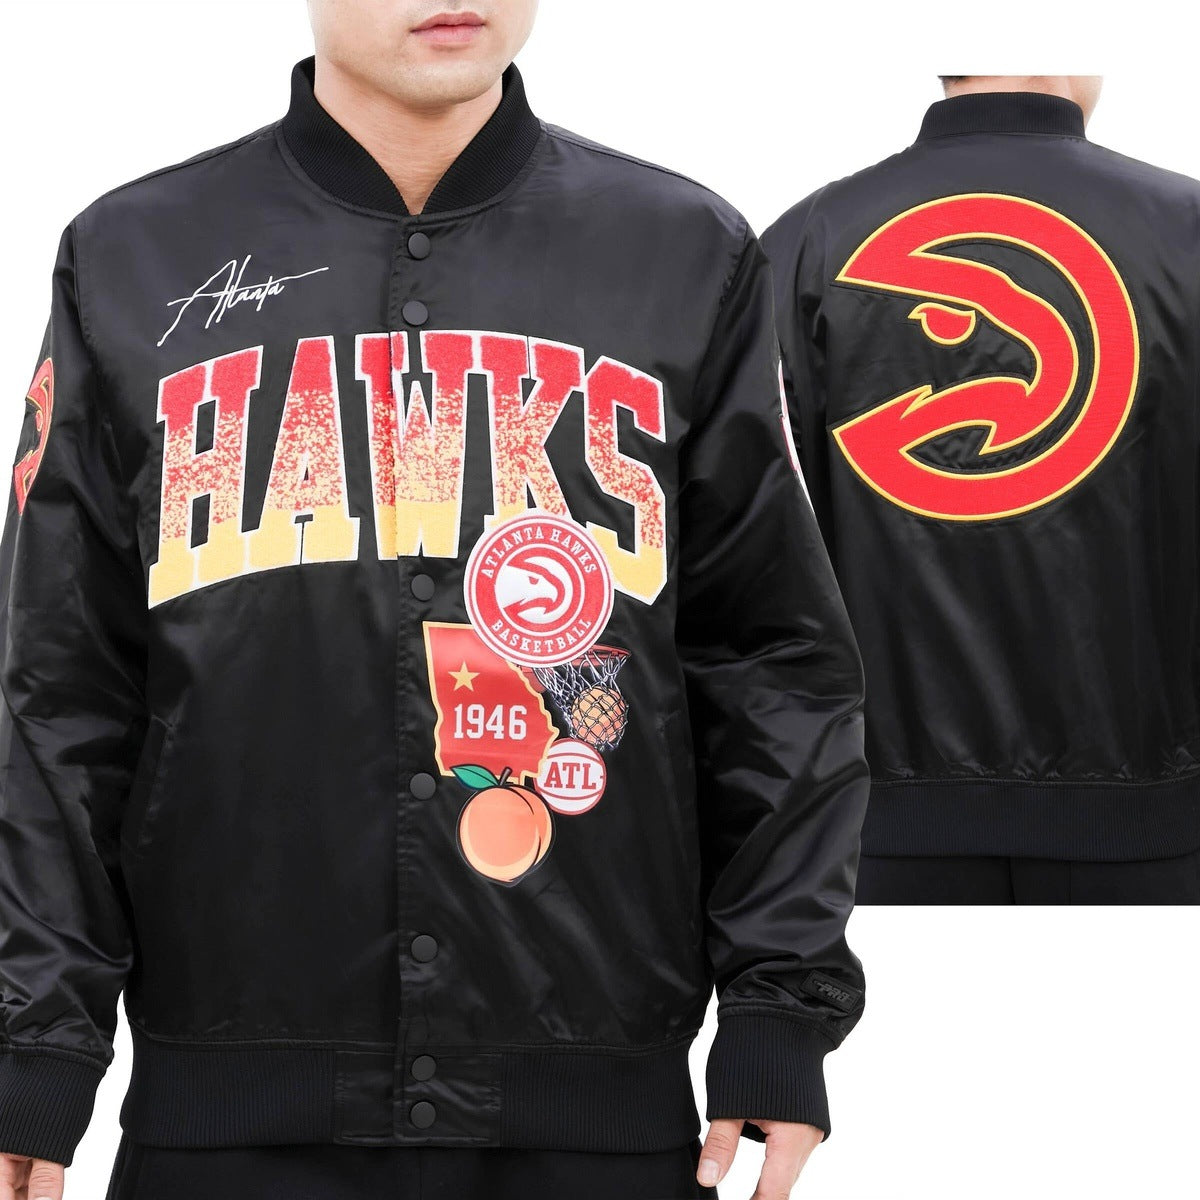 Vintage Atlanta Hawks Jacket